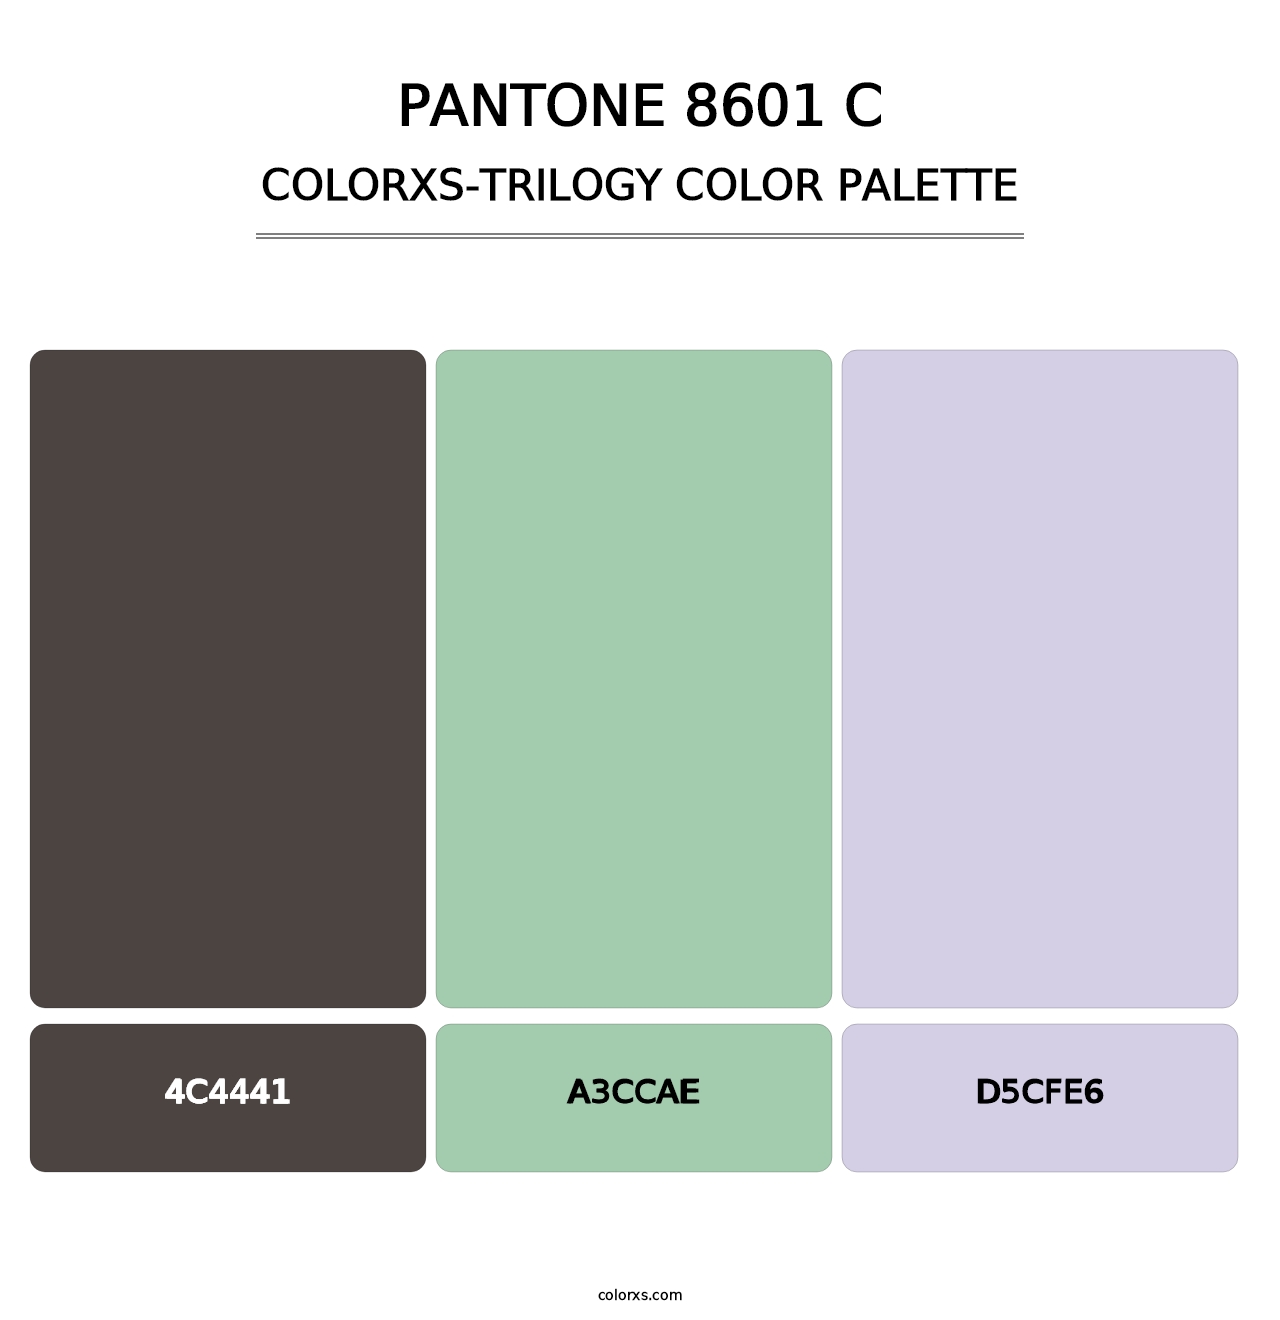 PANTONE 8601 C - Colorxs Trilogy Palette